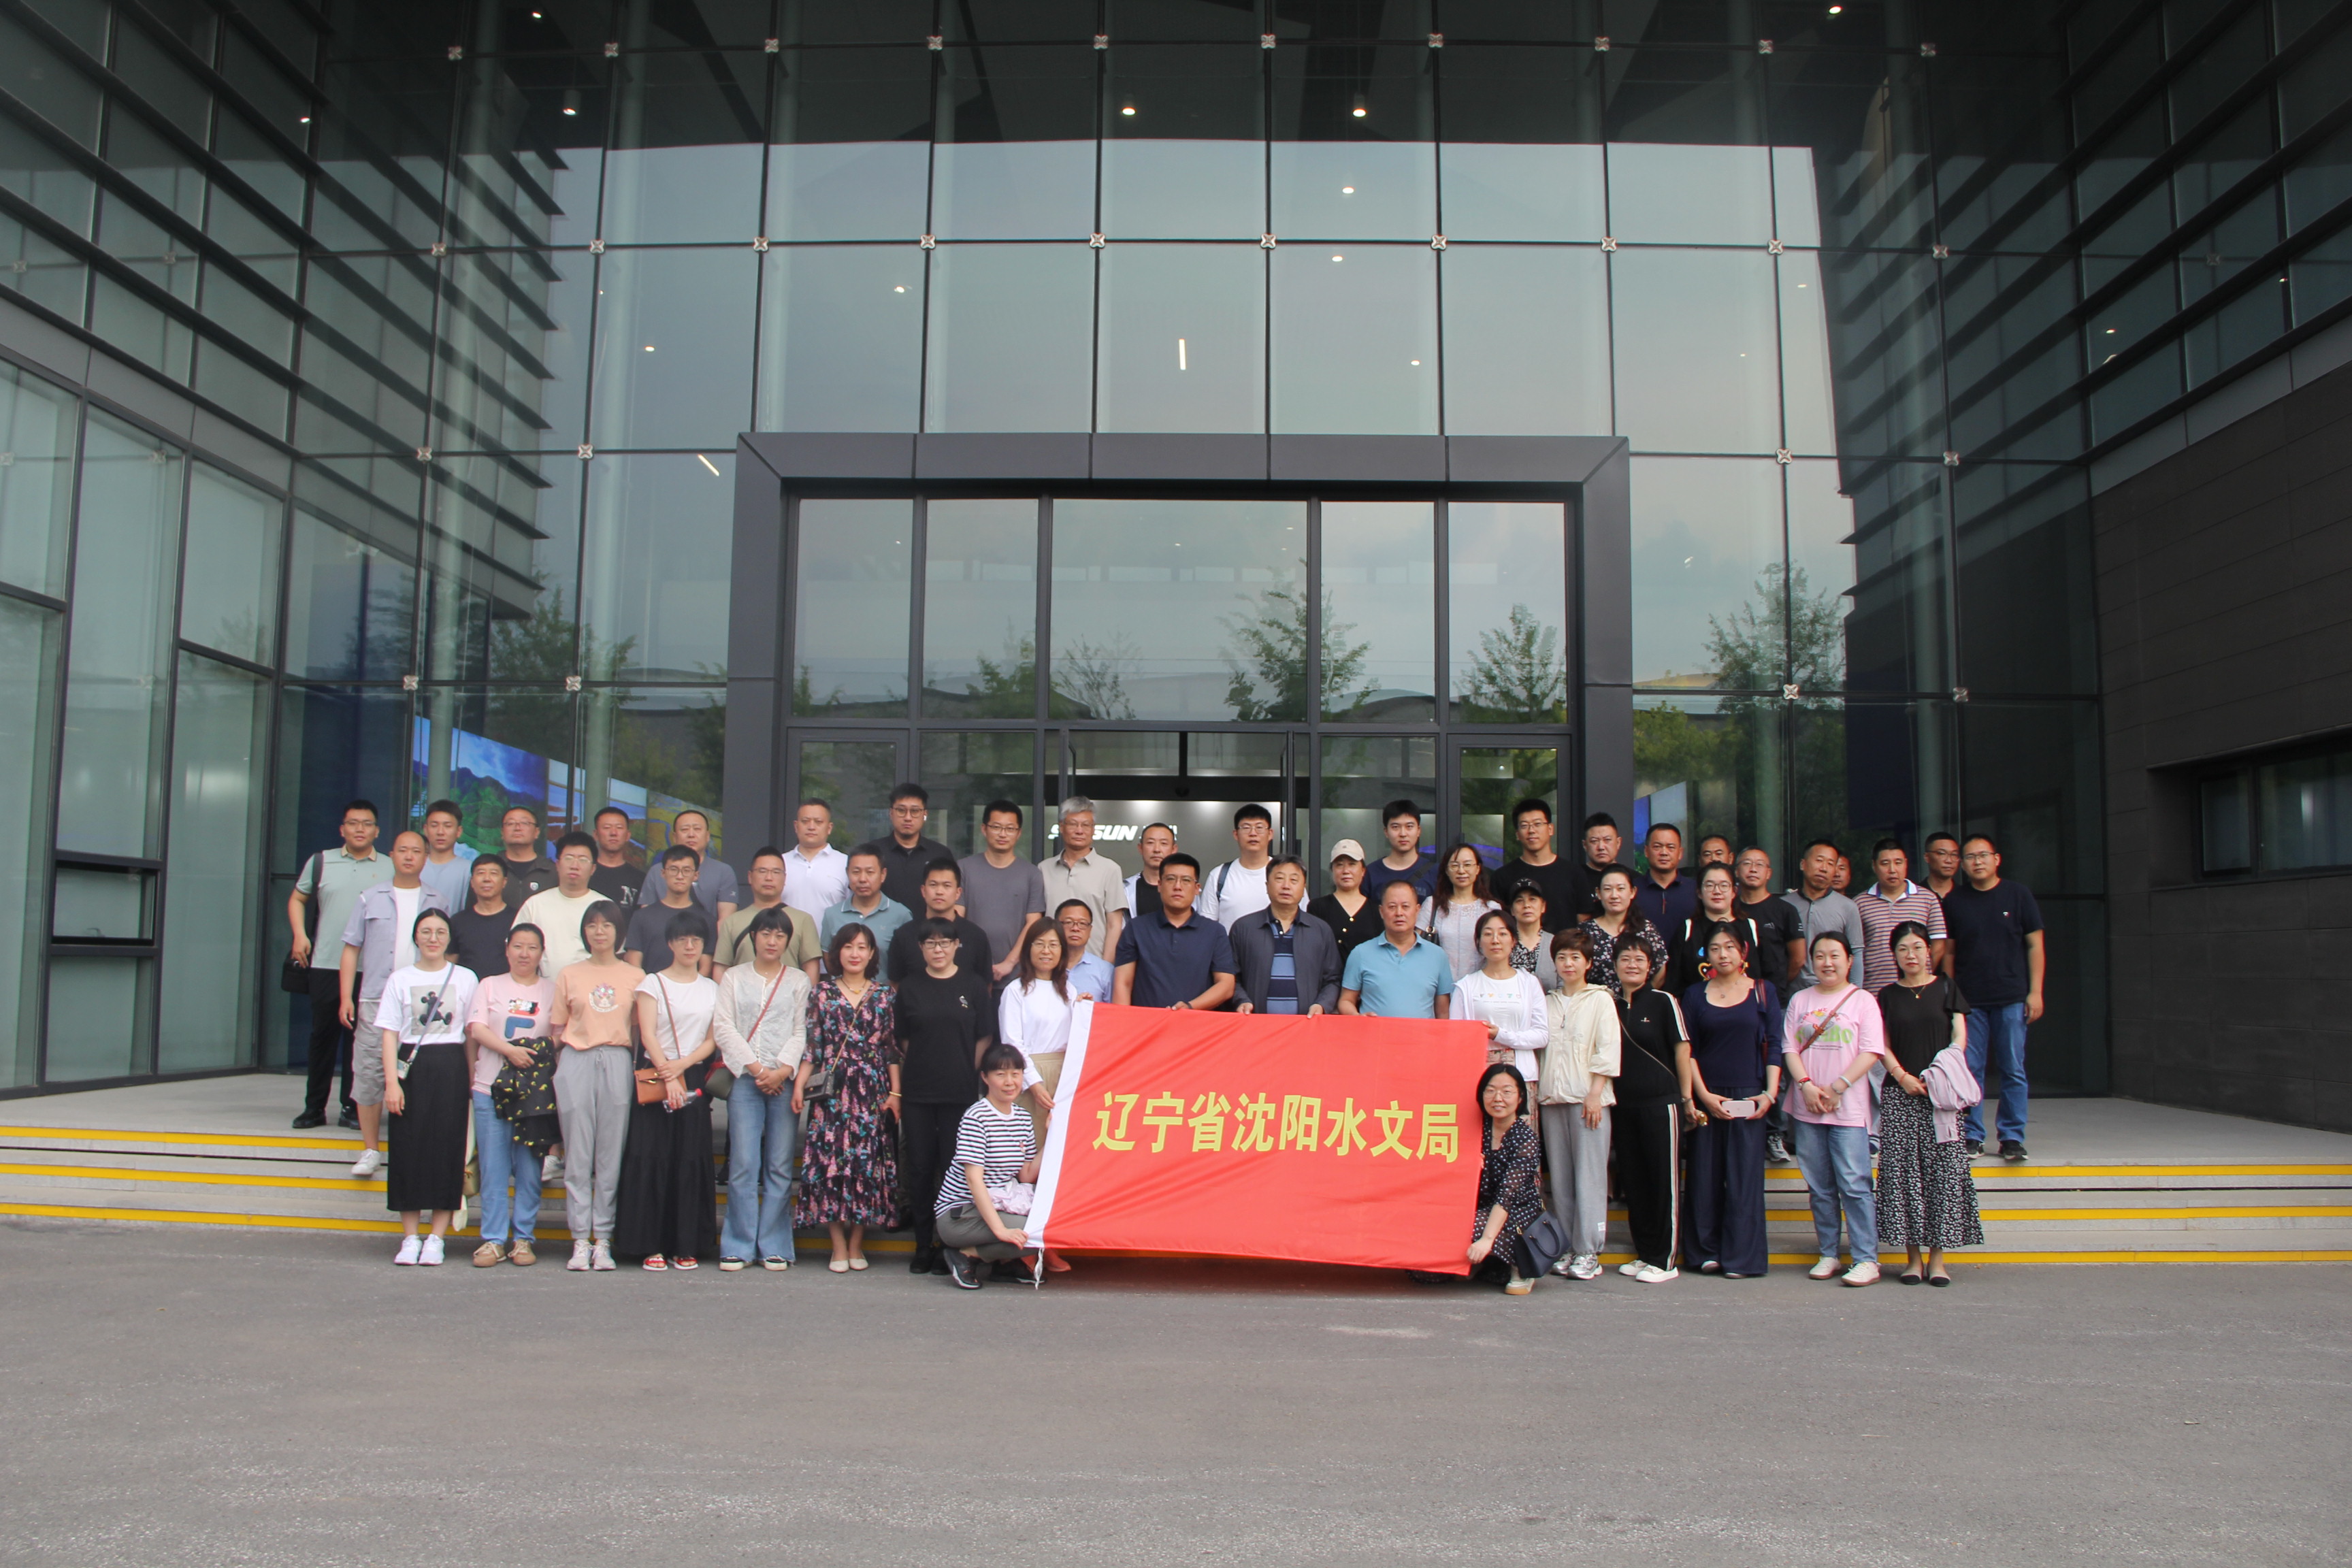 瀋陽水文局は従業員を組織して瀋陽新松ロボット会社を見学させる